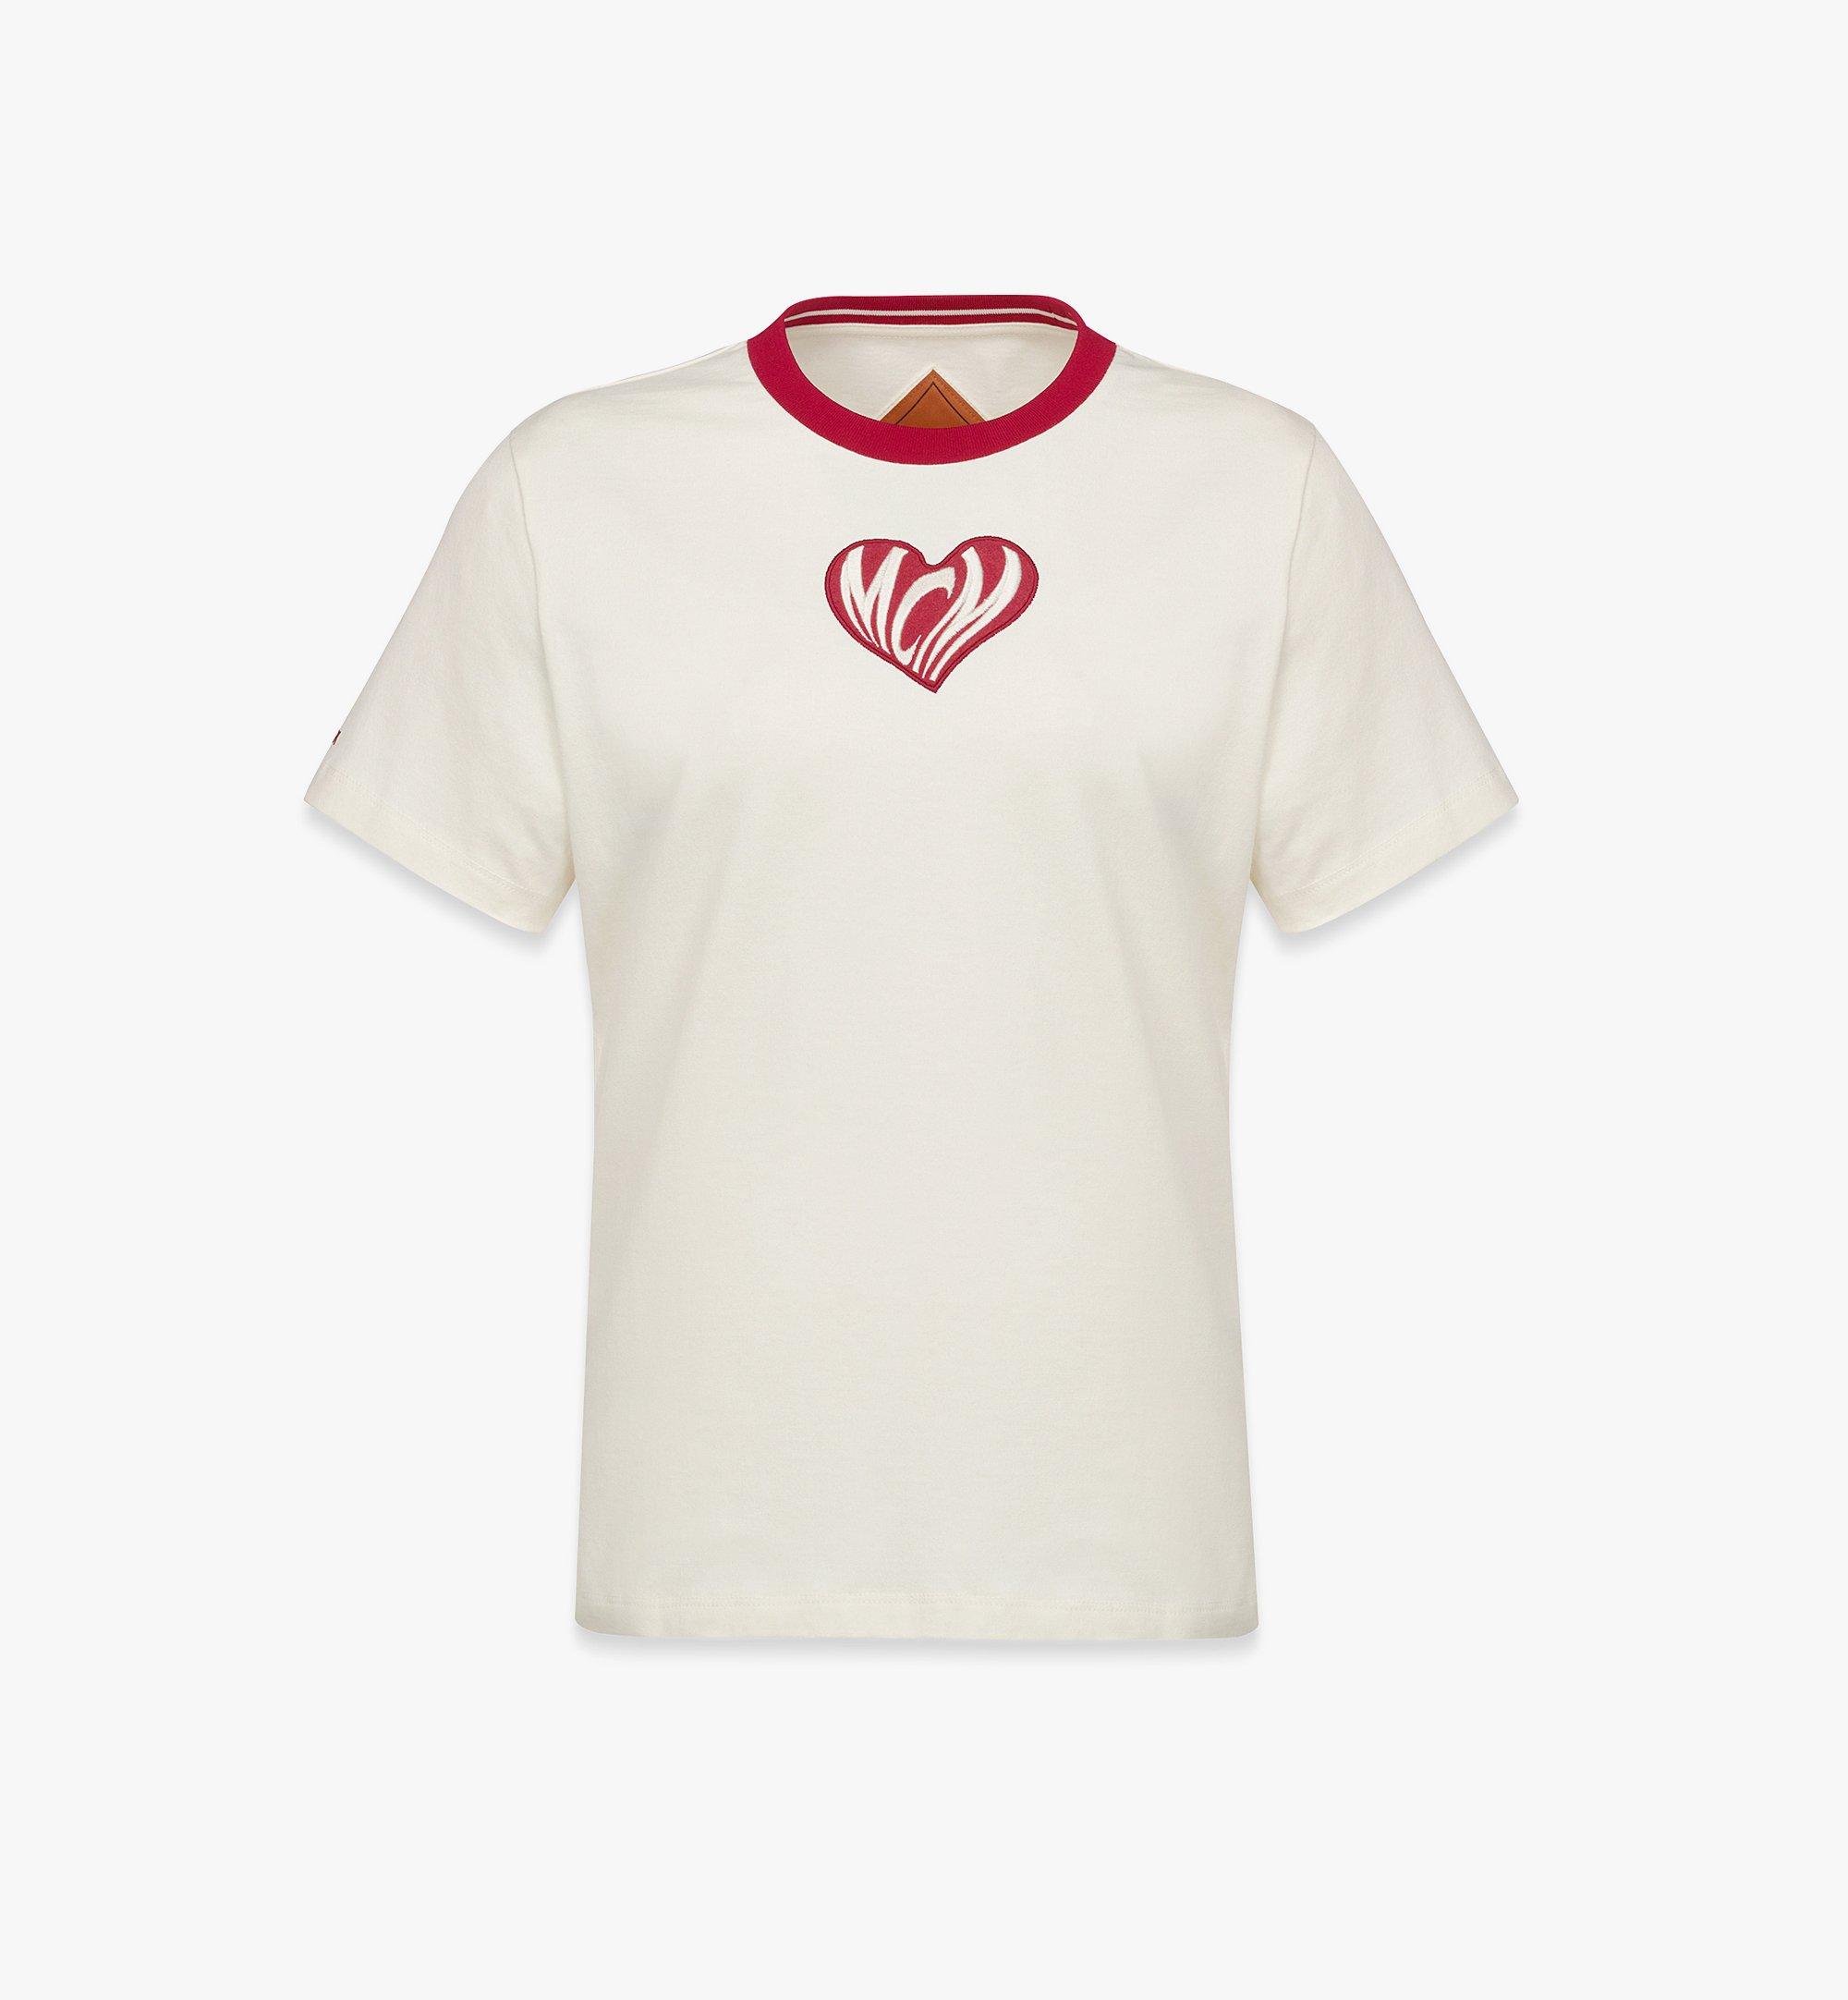 Heart Logo T-Shirt in Organic Cotton